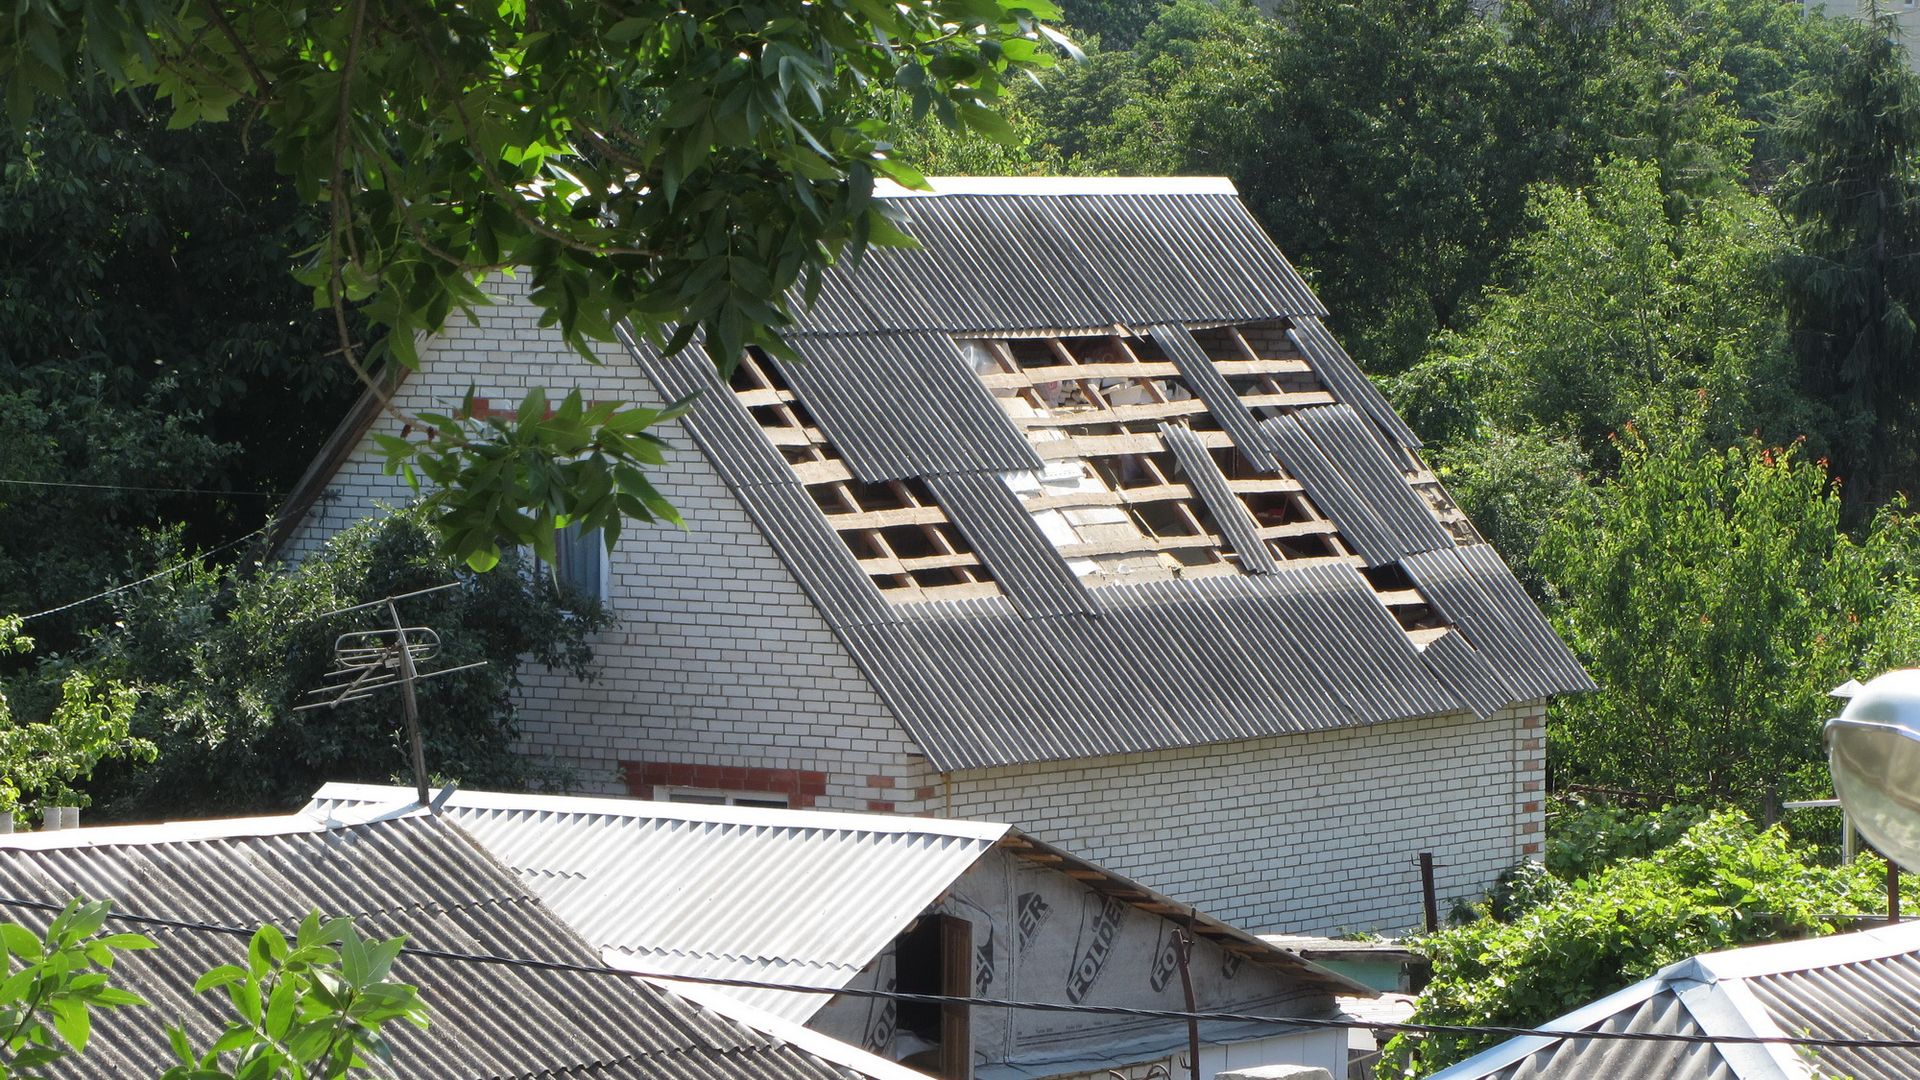 Ещё один повреждённый частный дом. Белгород, 03.07.2022 г.